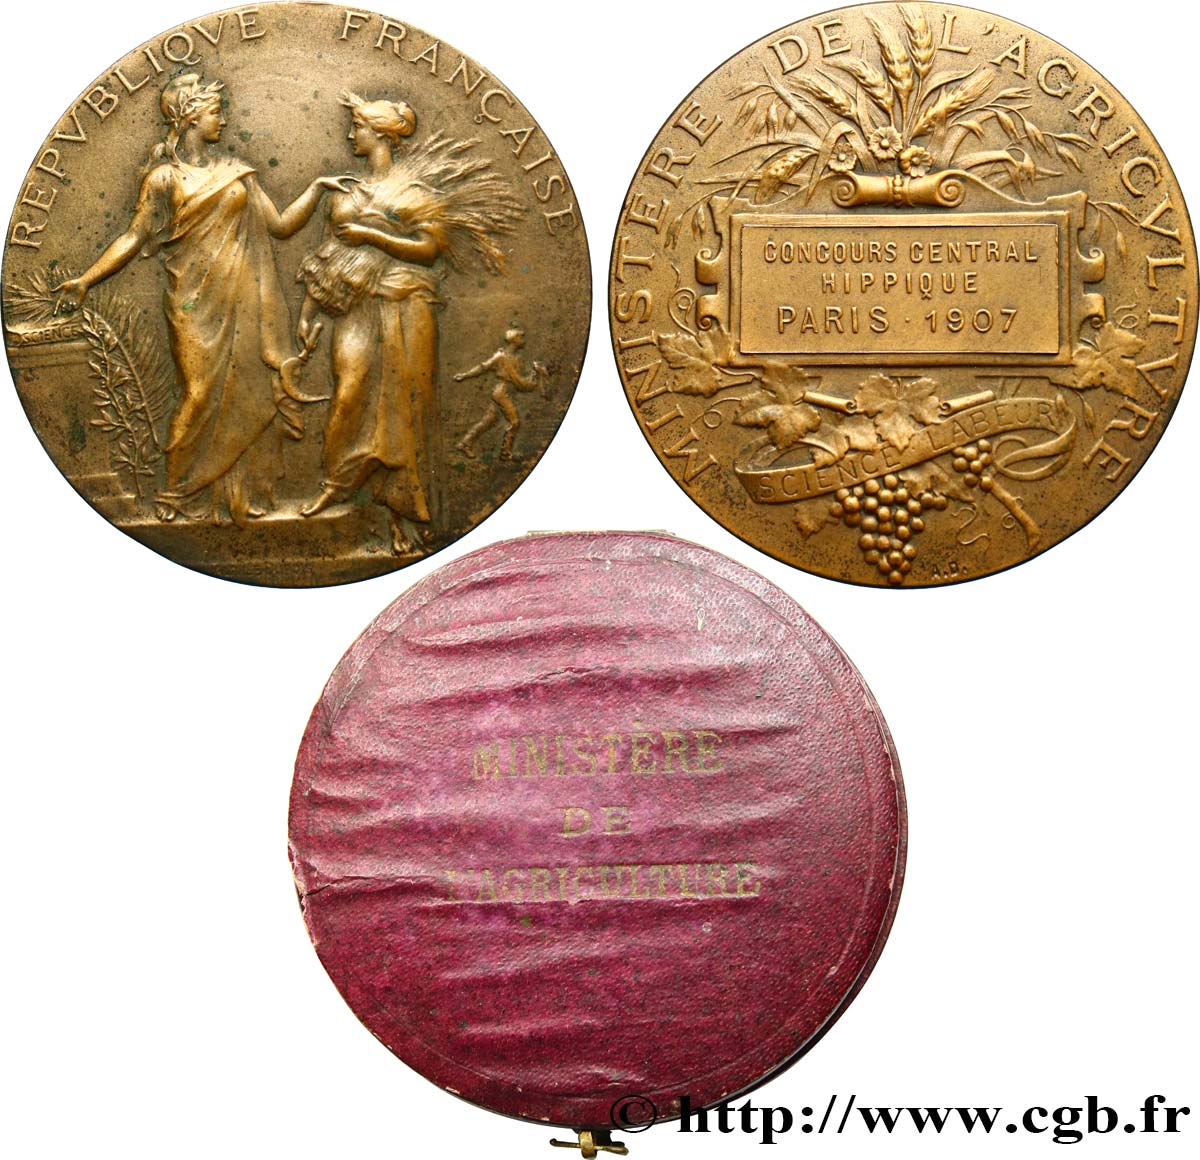 III REPUBLIC Médaille de récompense, concours central hippique AU